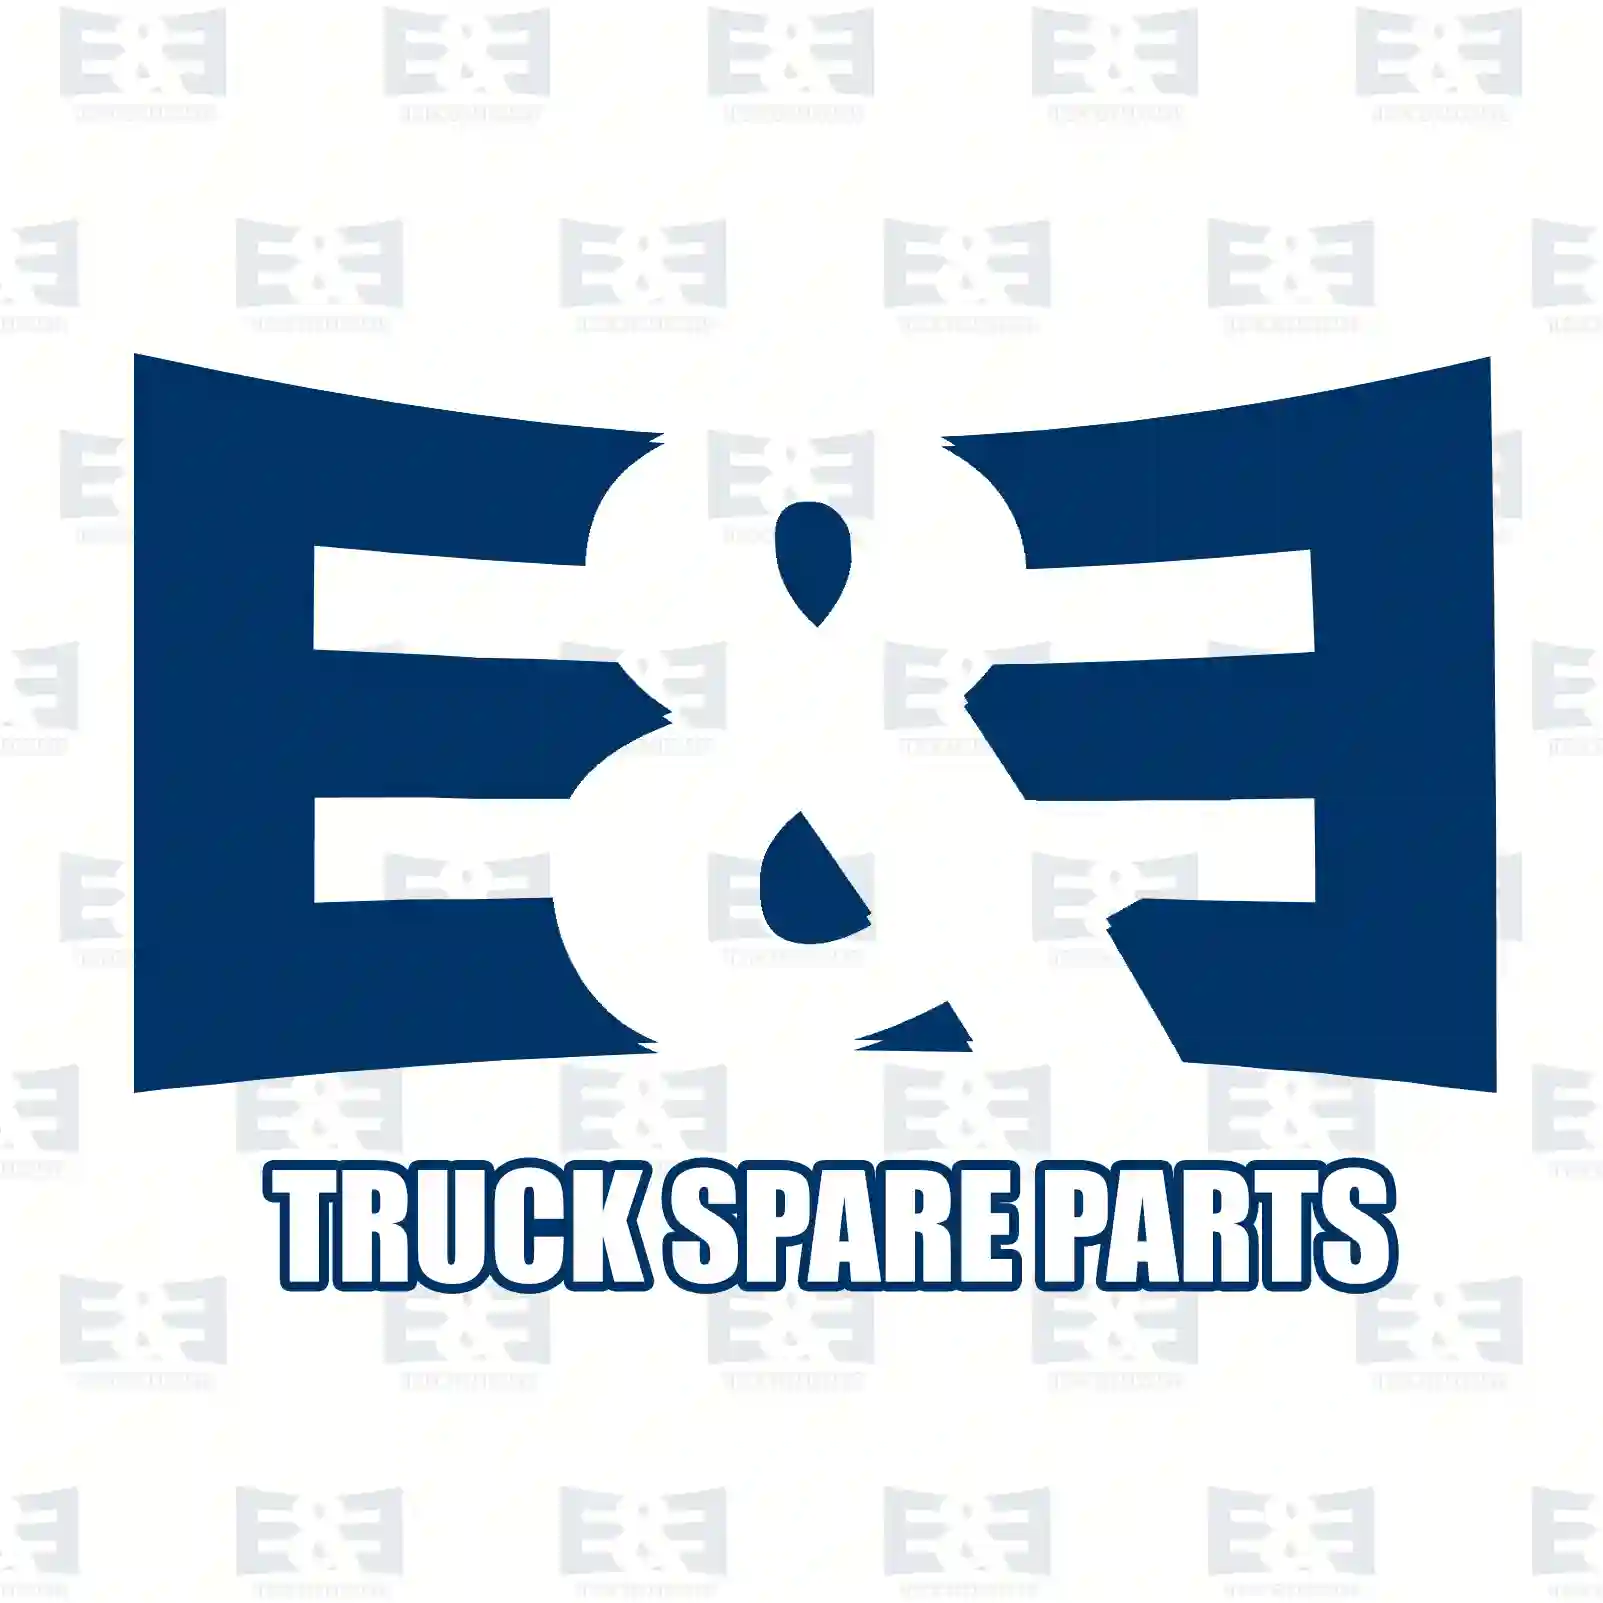 Drum brake lining kit, axle kit, 2E2293450, 21224717R, 21224717R/21224718R, 21224718R ||  2E2293450 E&E Truck Spare Parts | Truck Spare Parts, Auotomotive Spare Parts Drum brake lining kit, axle kit, 2E2293450, 21224717R, 21224717R/21224718R, 21224718R ||  2E2293450 E&E Truck Spare Parts | Truck Spare Parts, Auotomotive Spare Parts